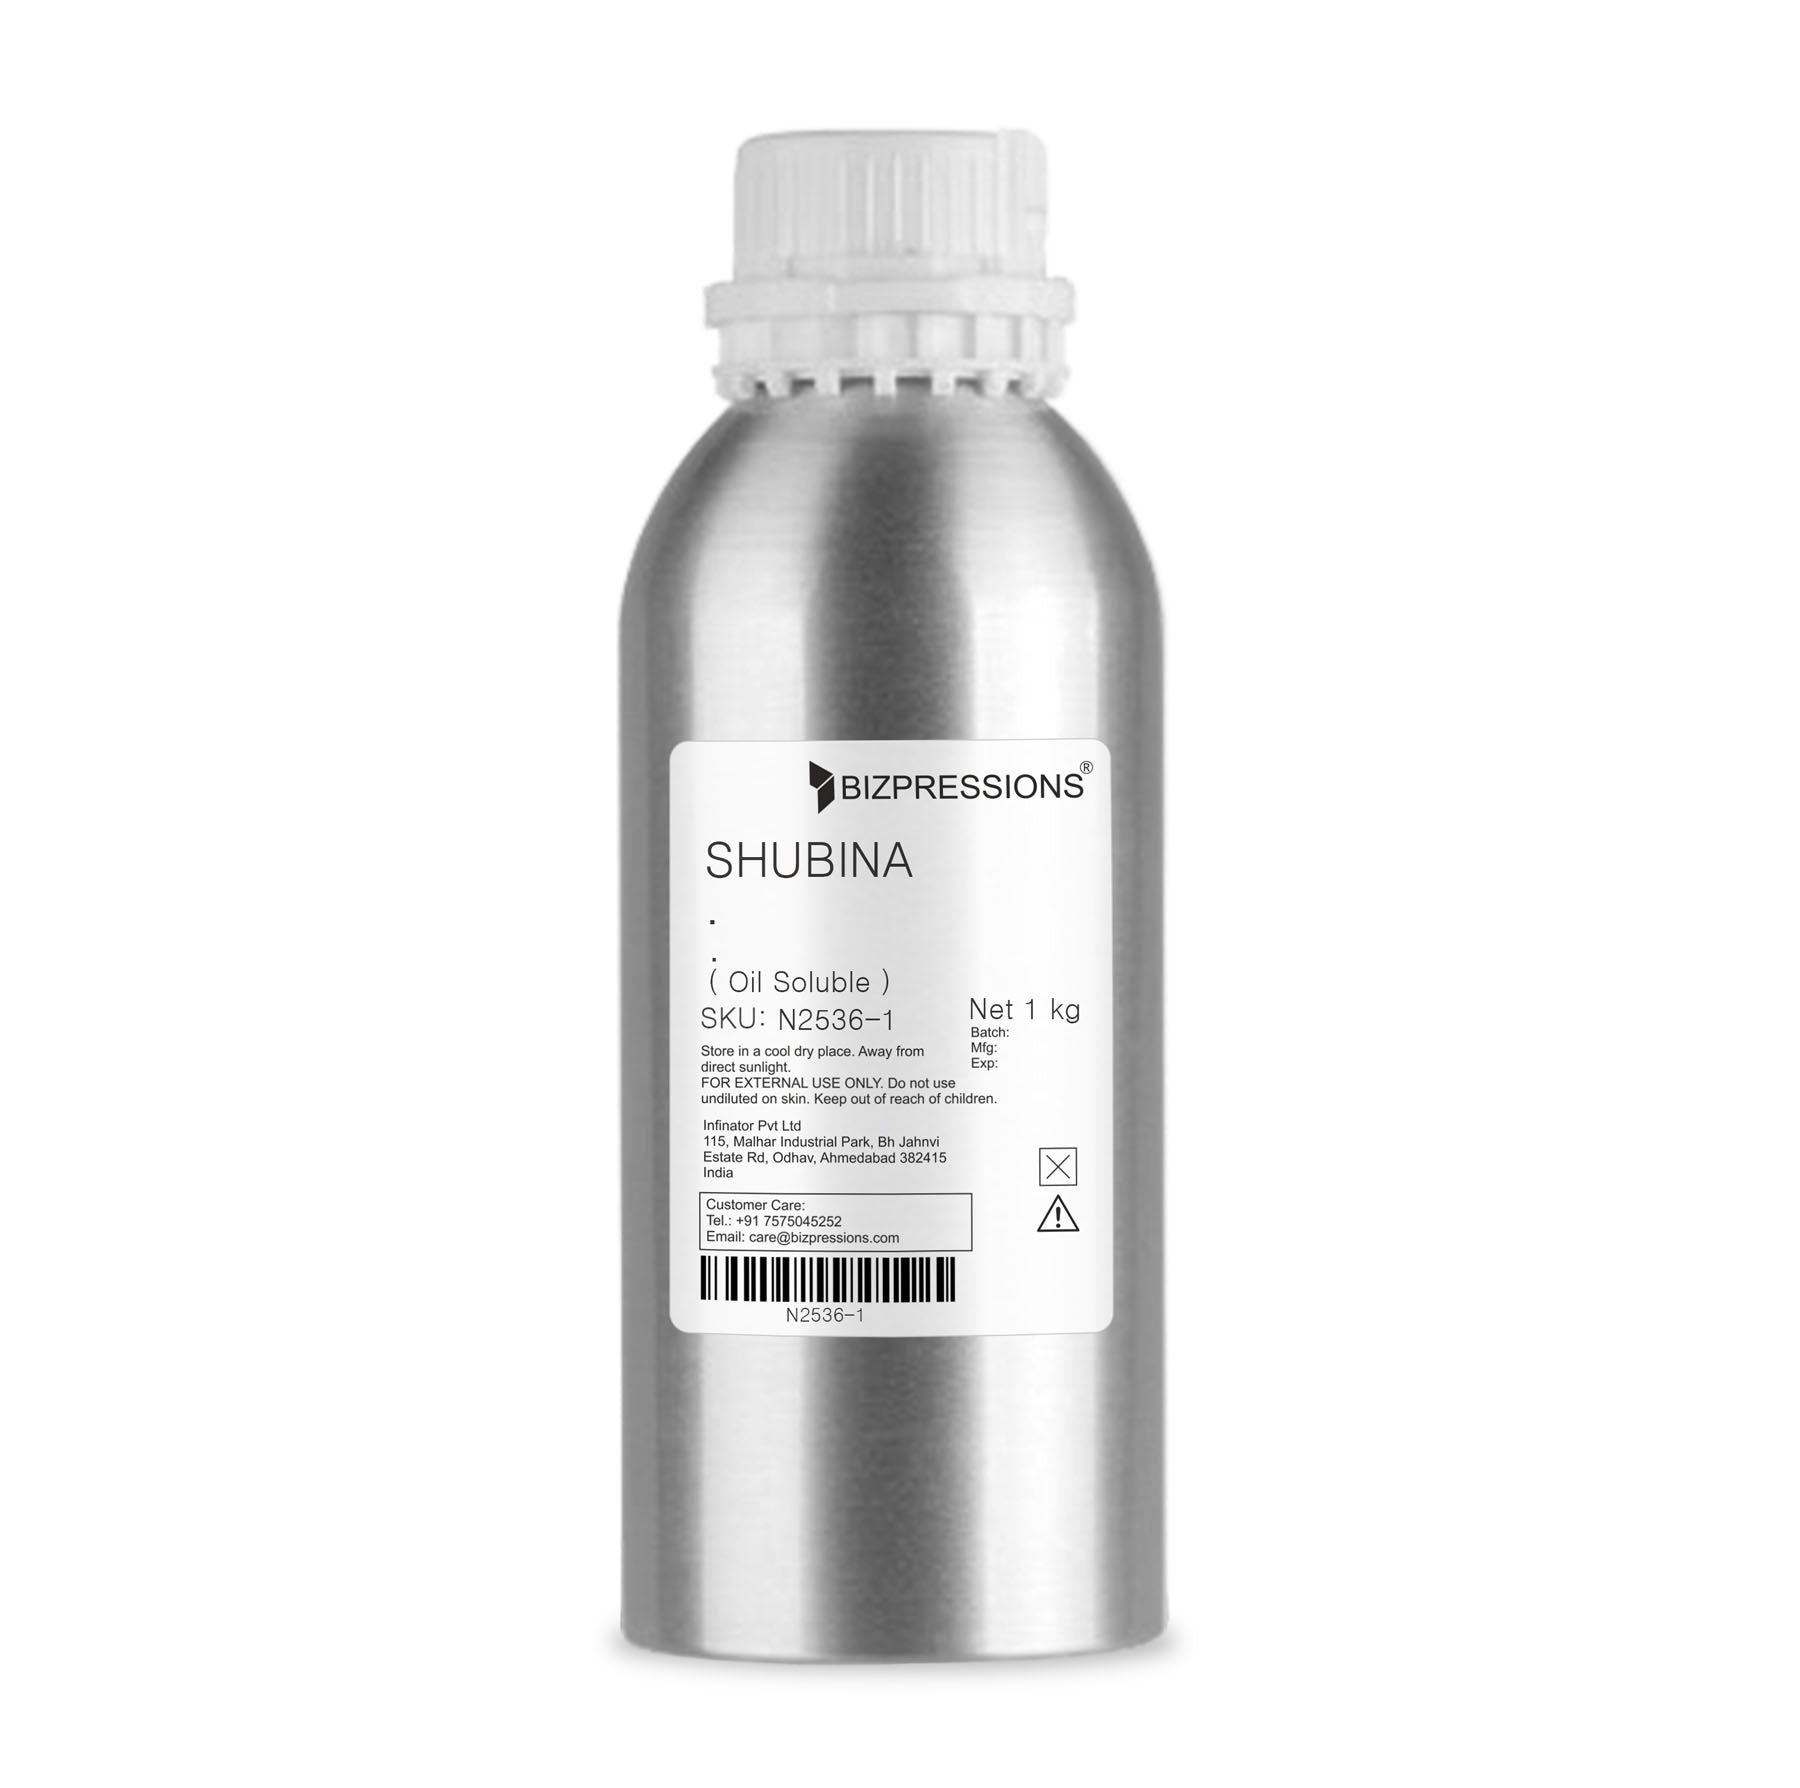 SHUBINA - Fragrance ( Oil Soluble ) - 1 kg